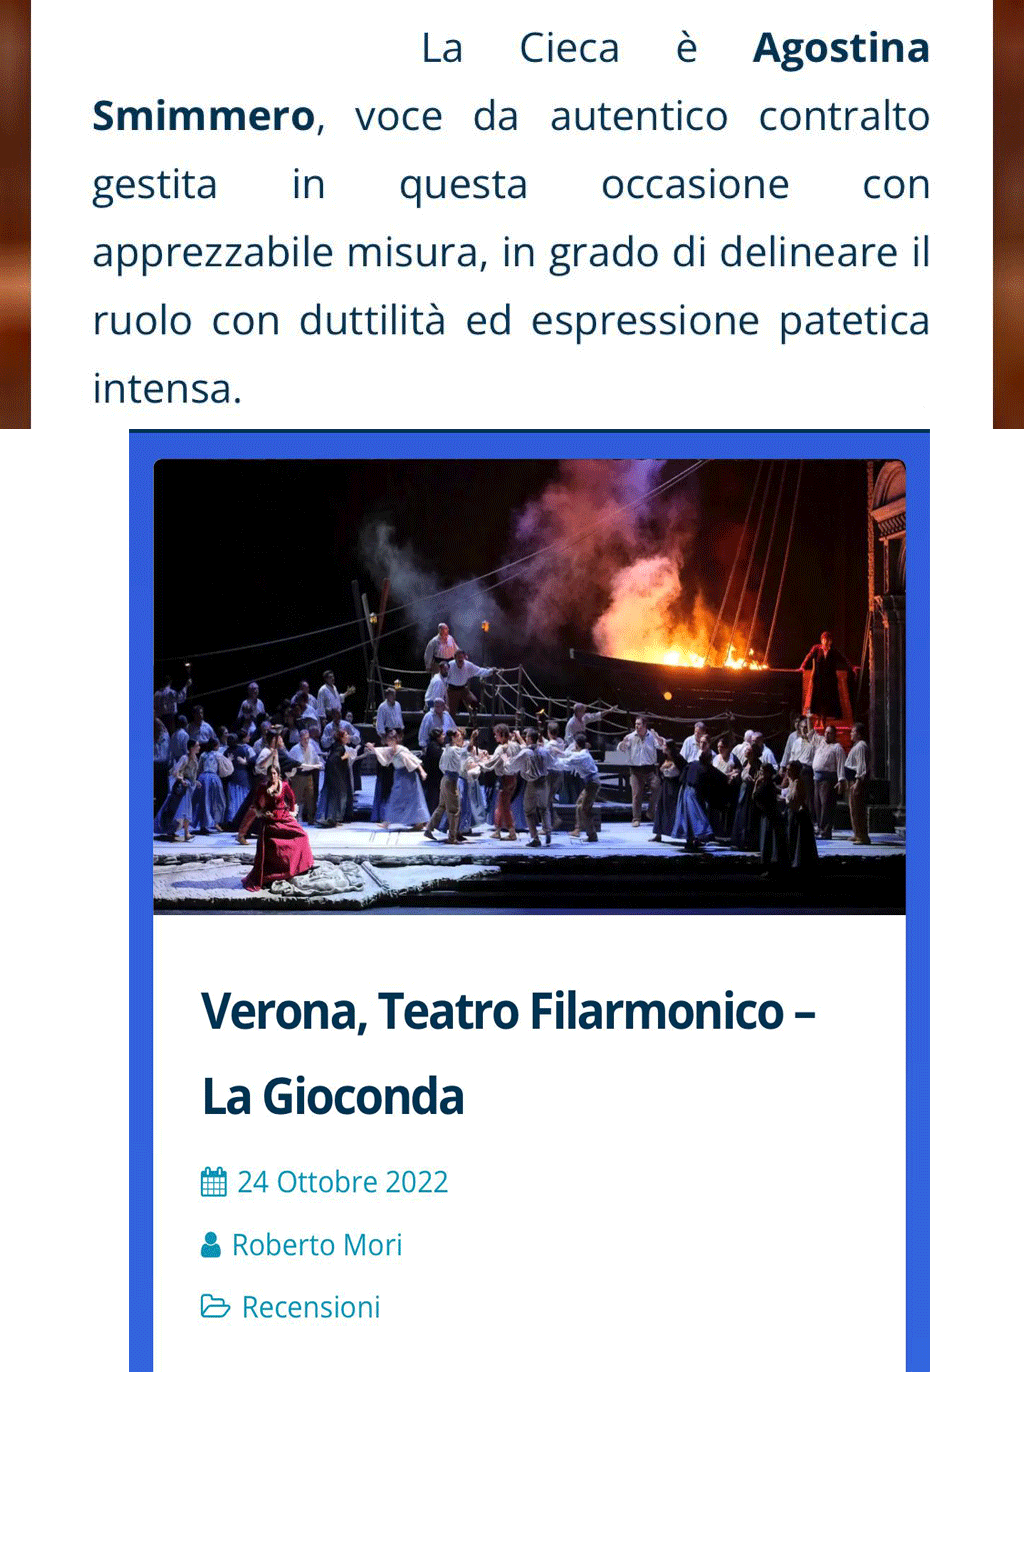 Recensione completa   : https://www.connessiallopera.it/recensioni/2022/verona-teatro-filarmonico-la-gioconda/